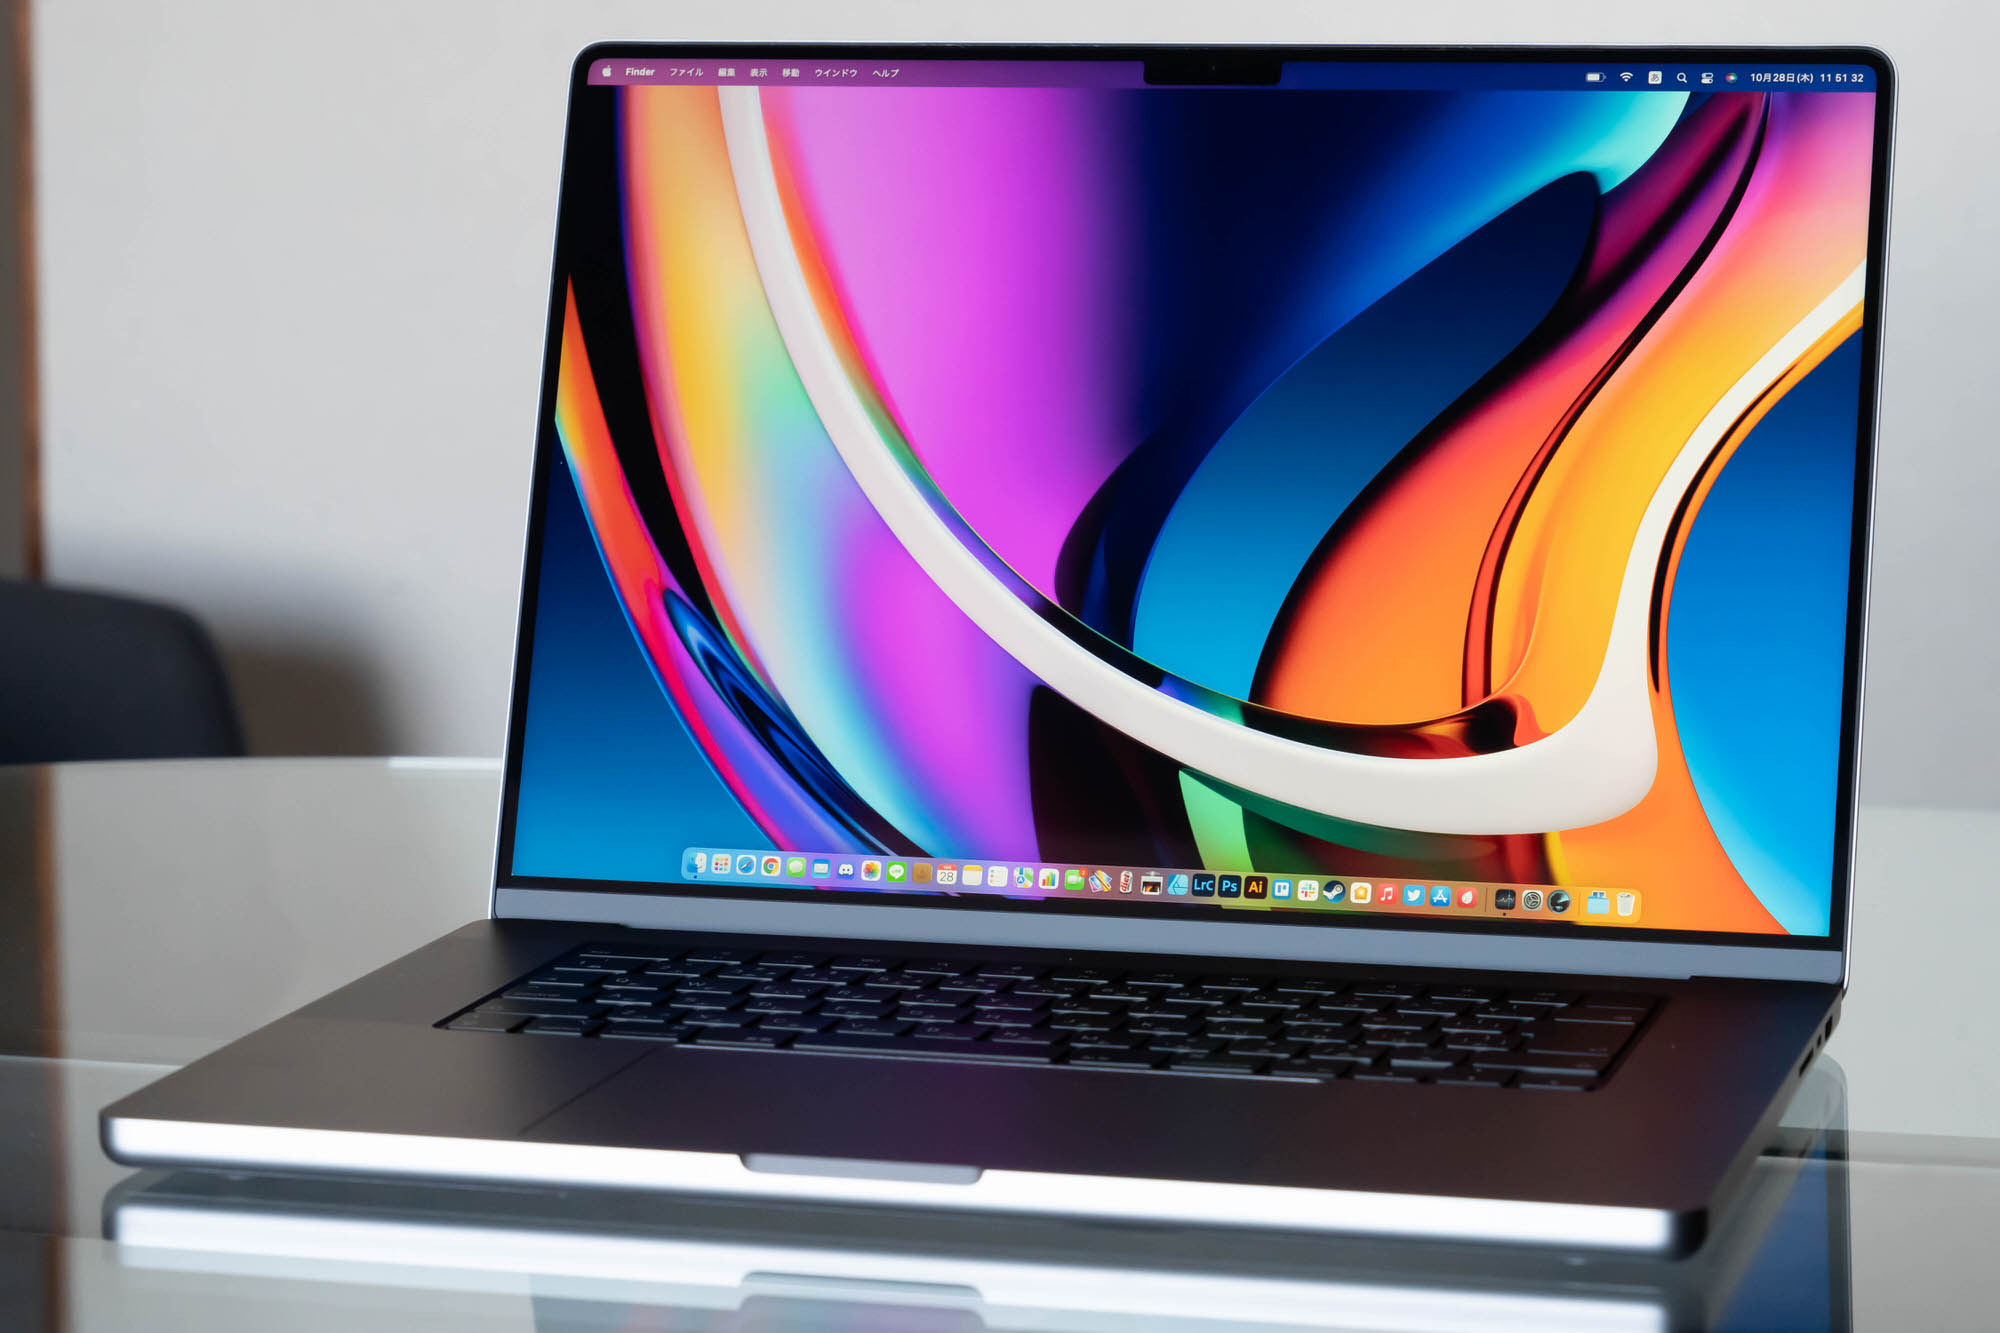 16インチMacBook Pro レビュー (M1 Pro, 2021) | 画面大型化とバッテリー持ち改善で使いやすく。14インチと比較し見えてきたもの  | CoRRiENTE.top